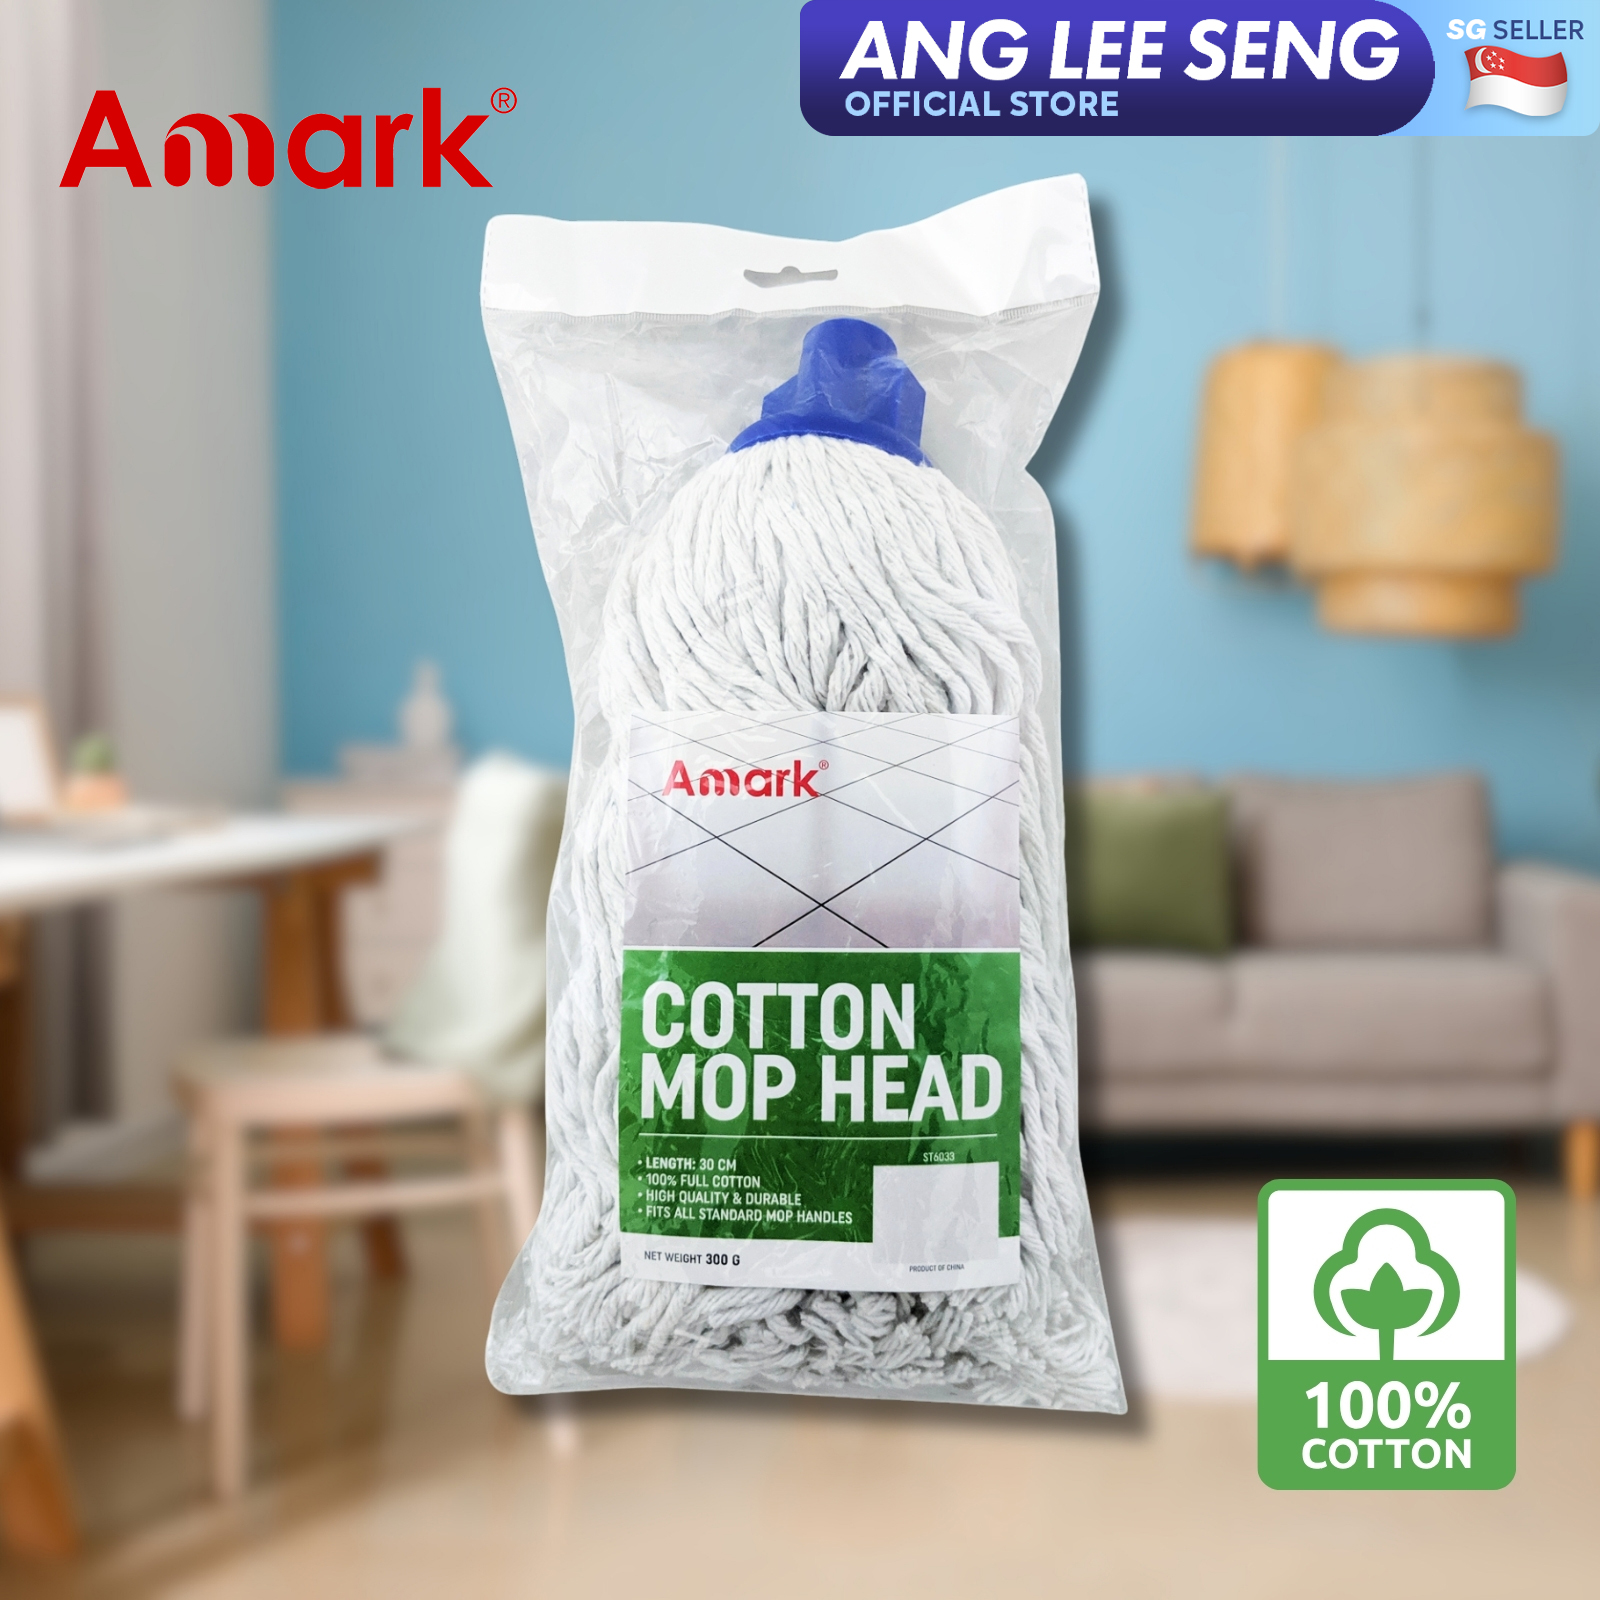 Amark Cotton Mop Head 300g